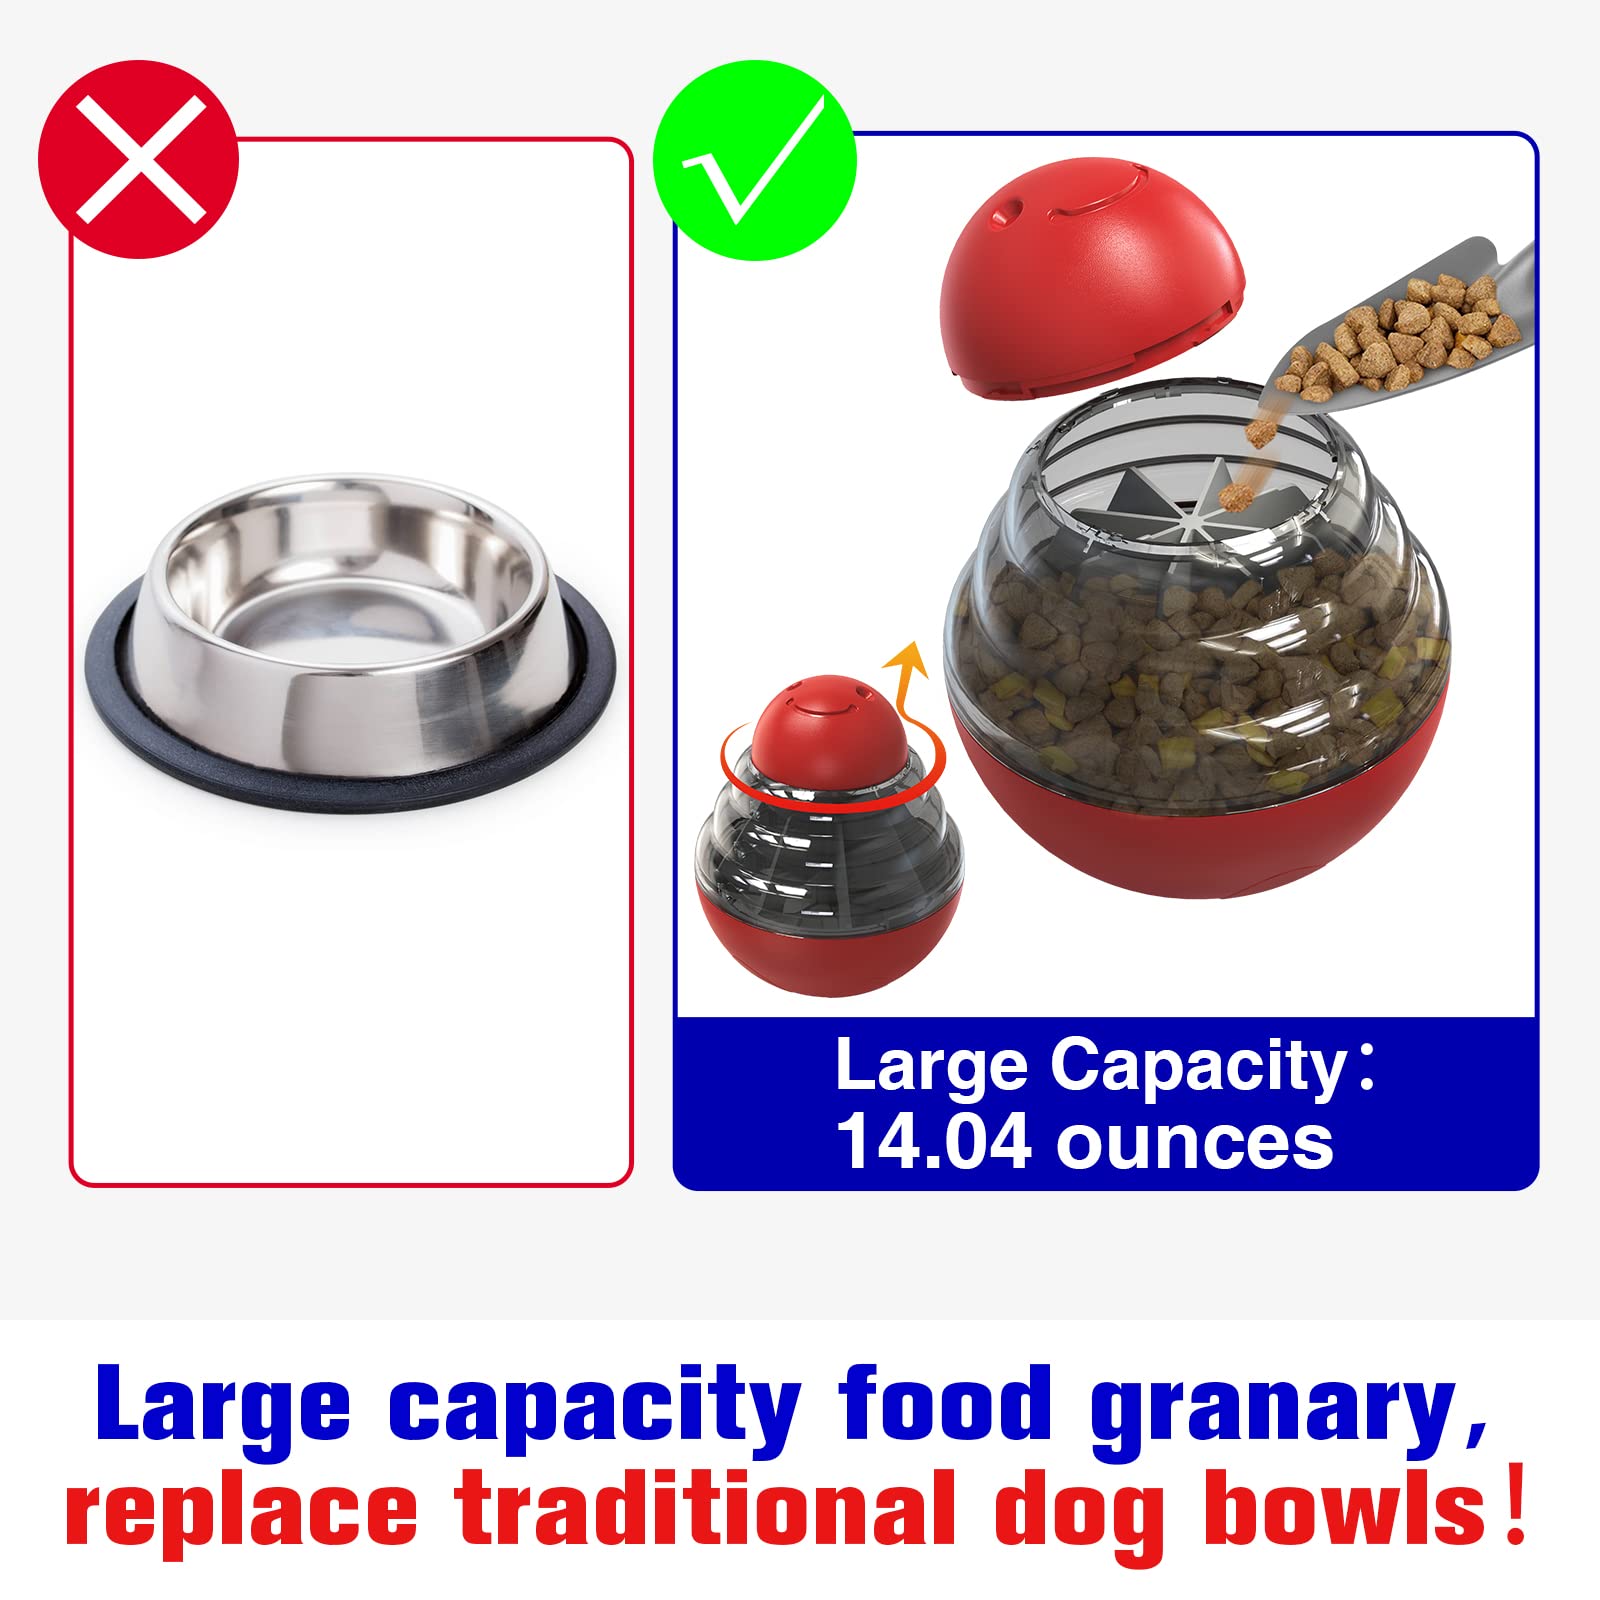 Slow Feeder Dog Bowls Slow Feeding Dog Bowl Small Medium Breed Dog Food Bowls Slow Feed Dog Bowl Slow Eating Dog Slow Feeder Bowl Puppy Dog Puzzle